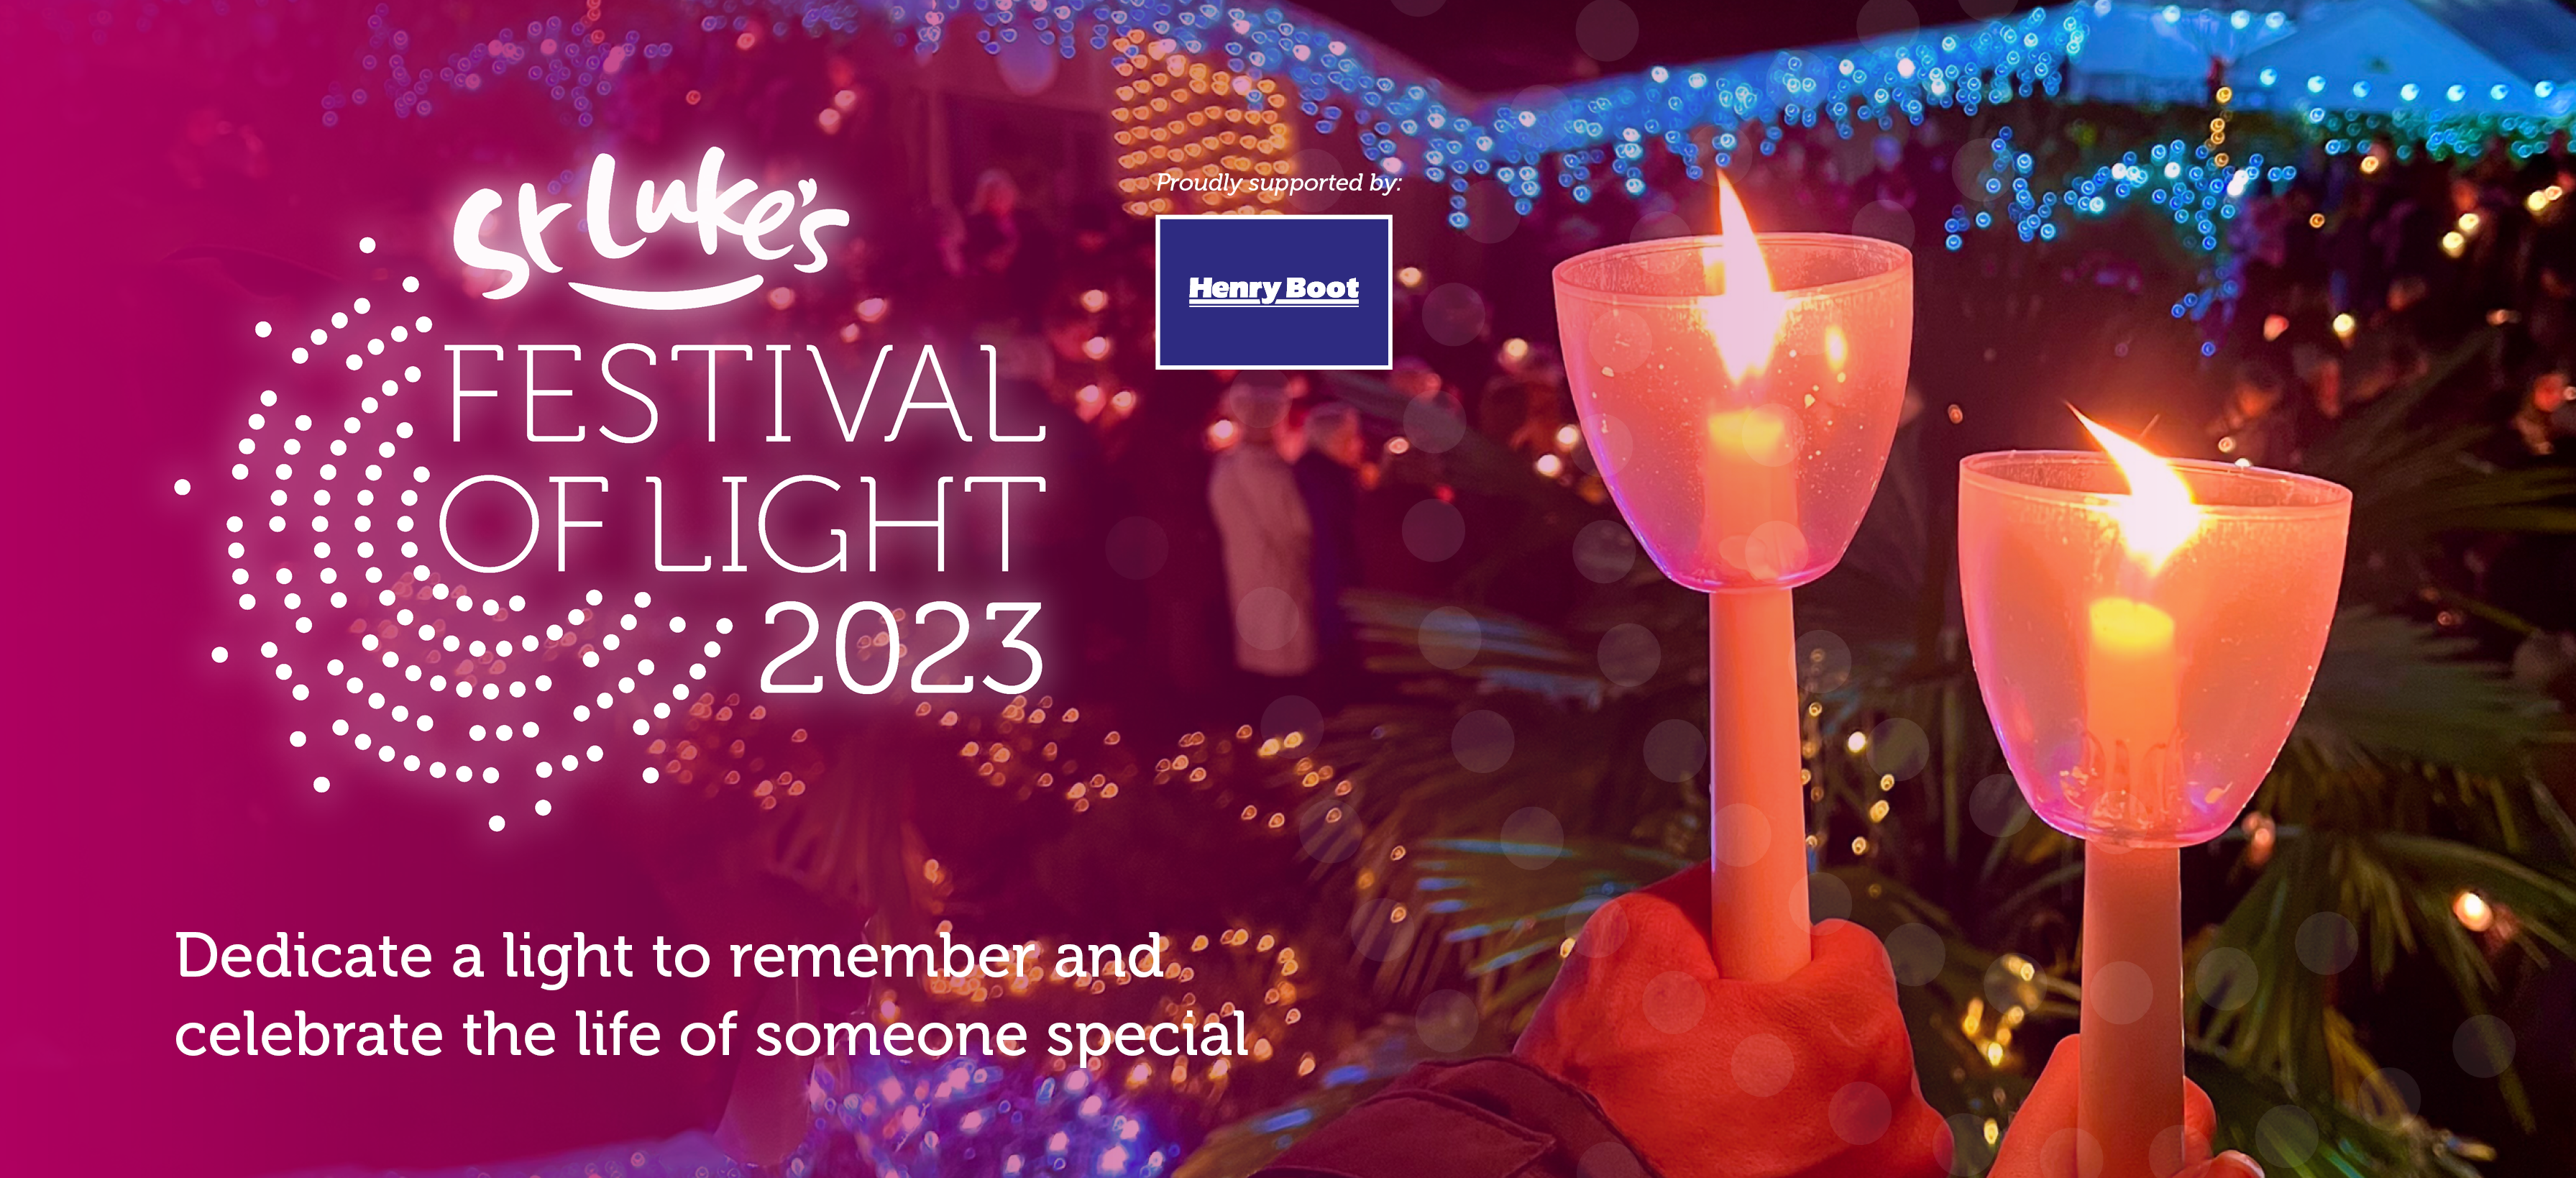 Festival of Light 2023